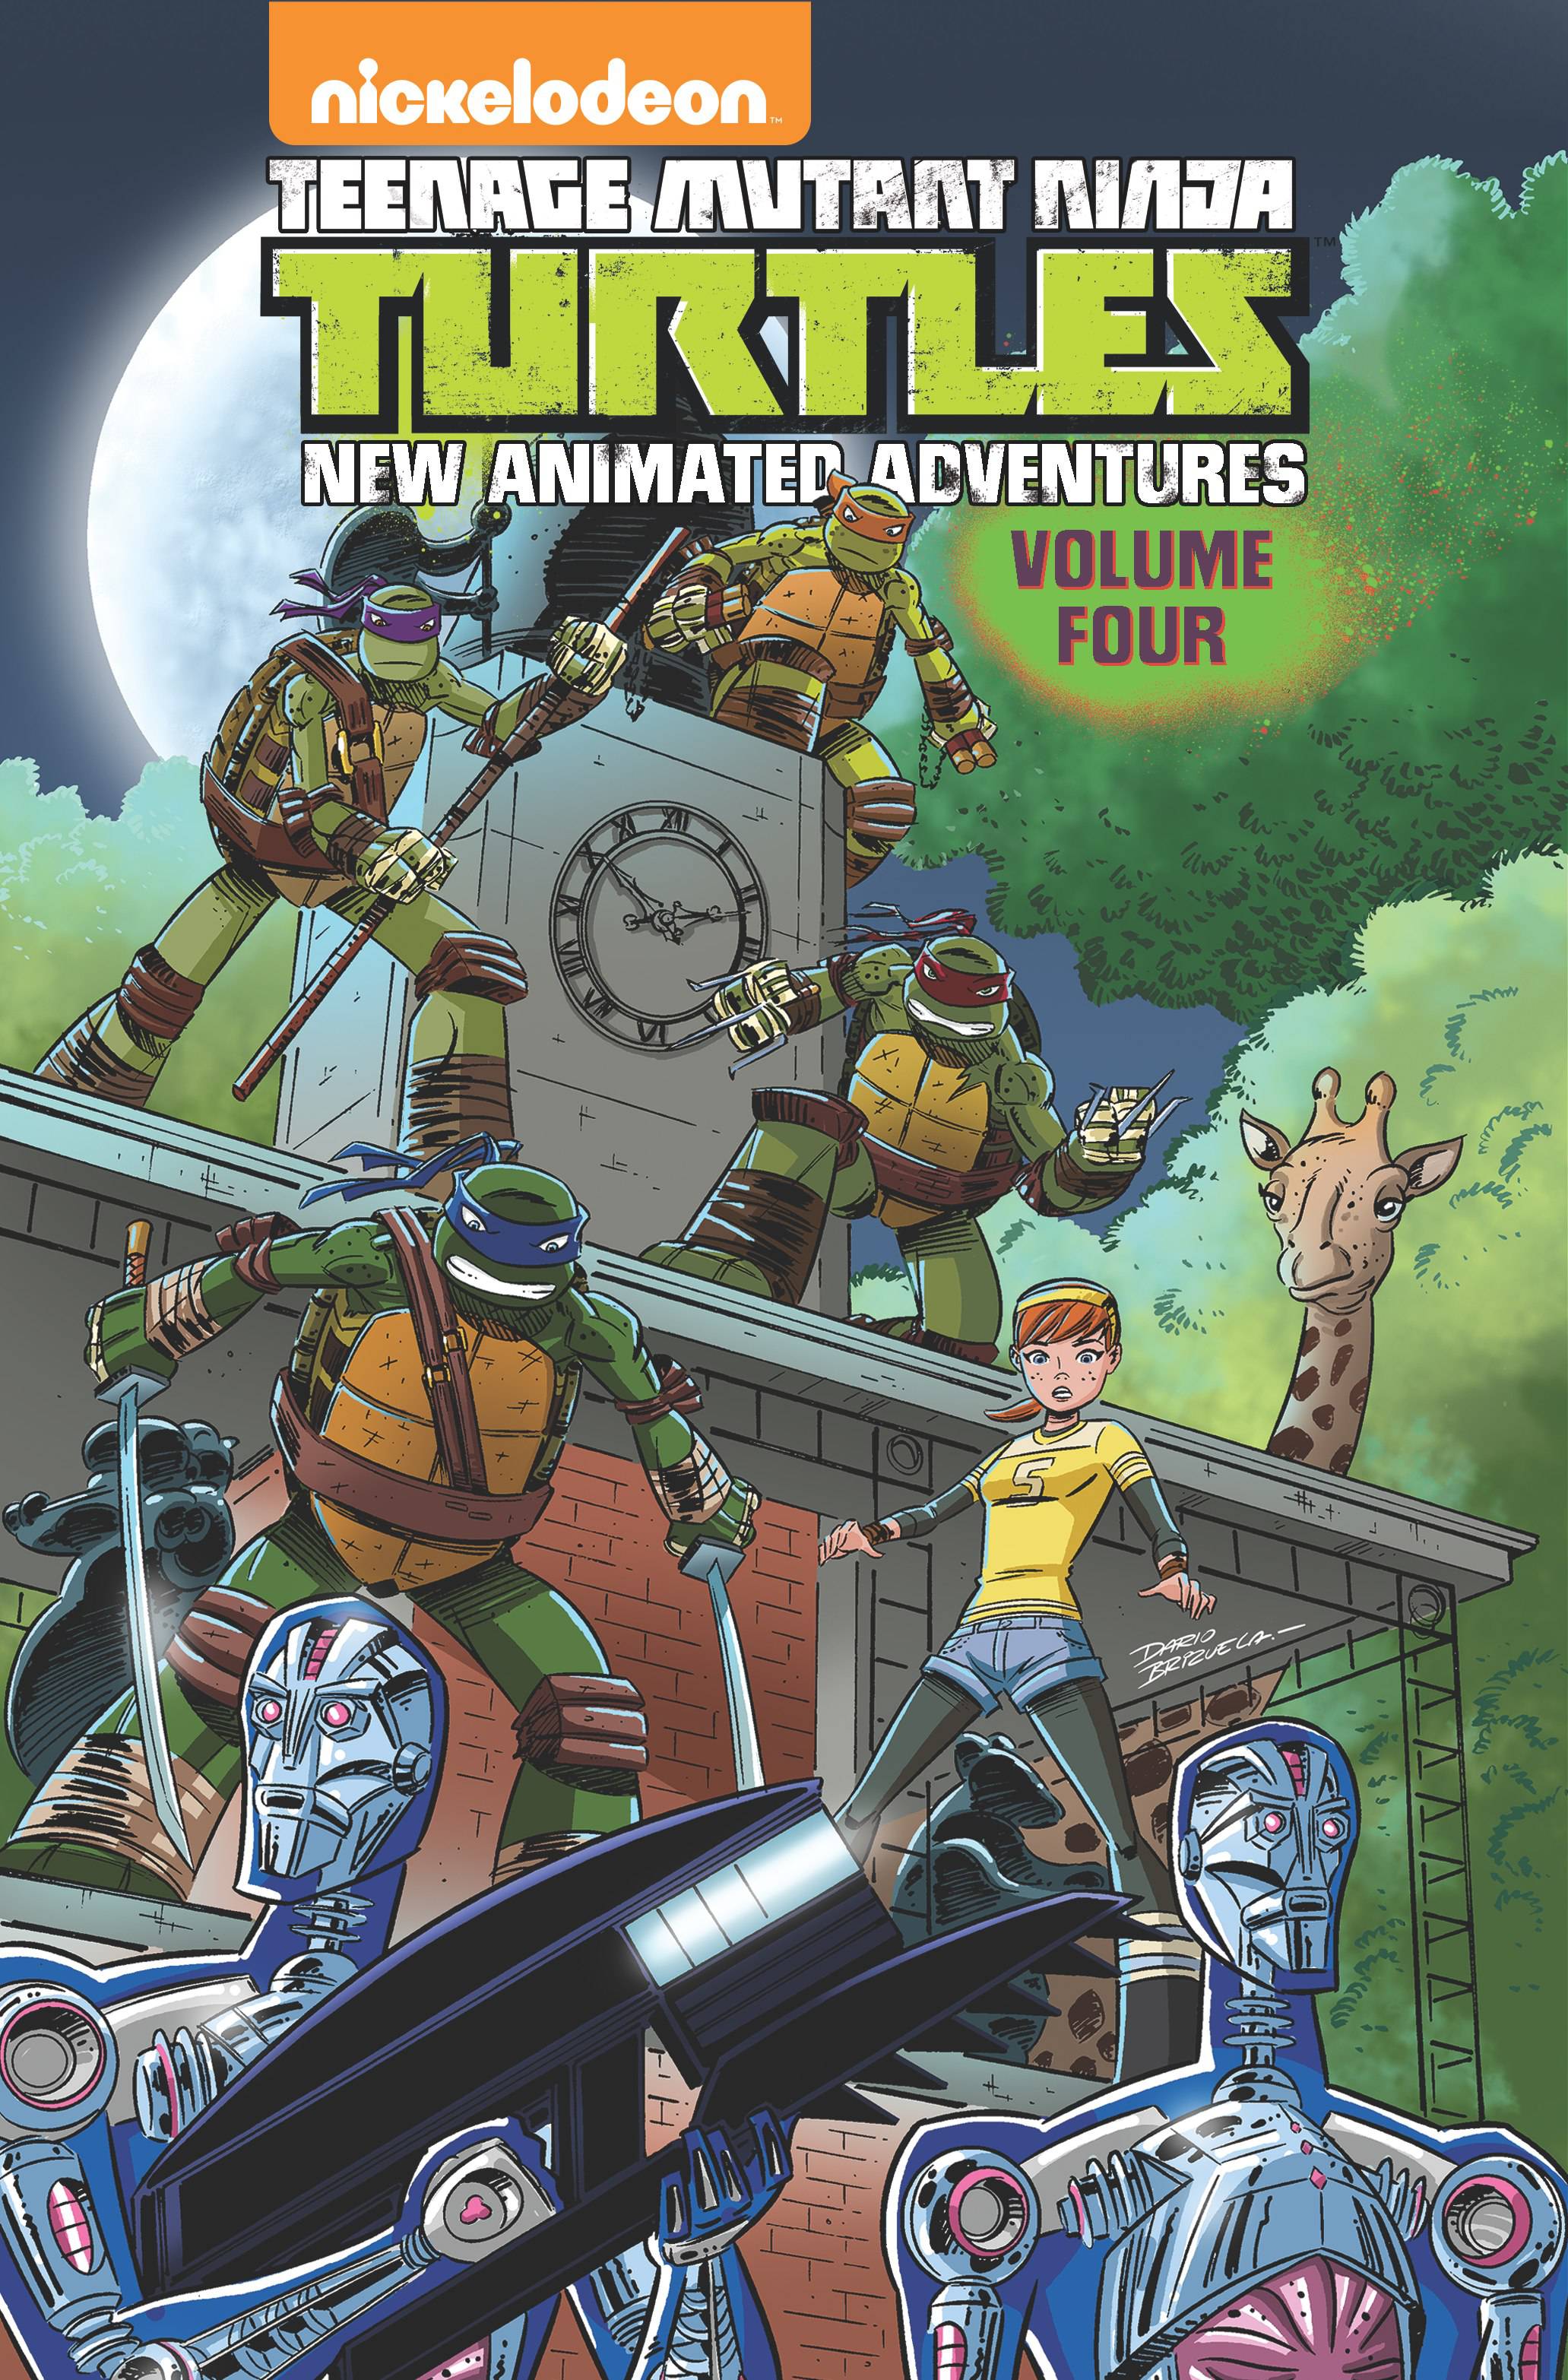 Teenage Mutant Ninja Turtles New Animated Adventures Graphic Novel Volume 4